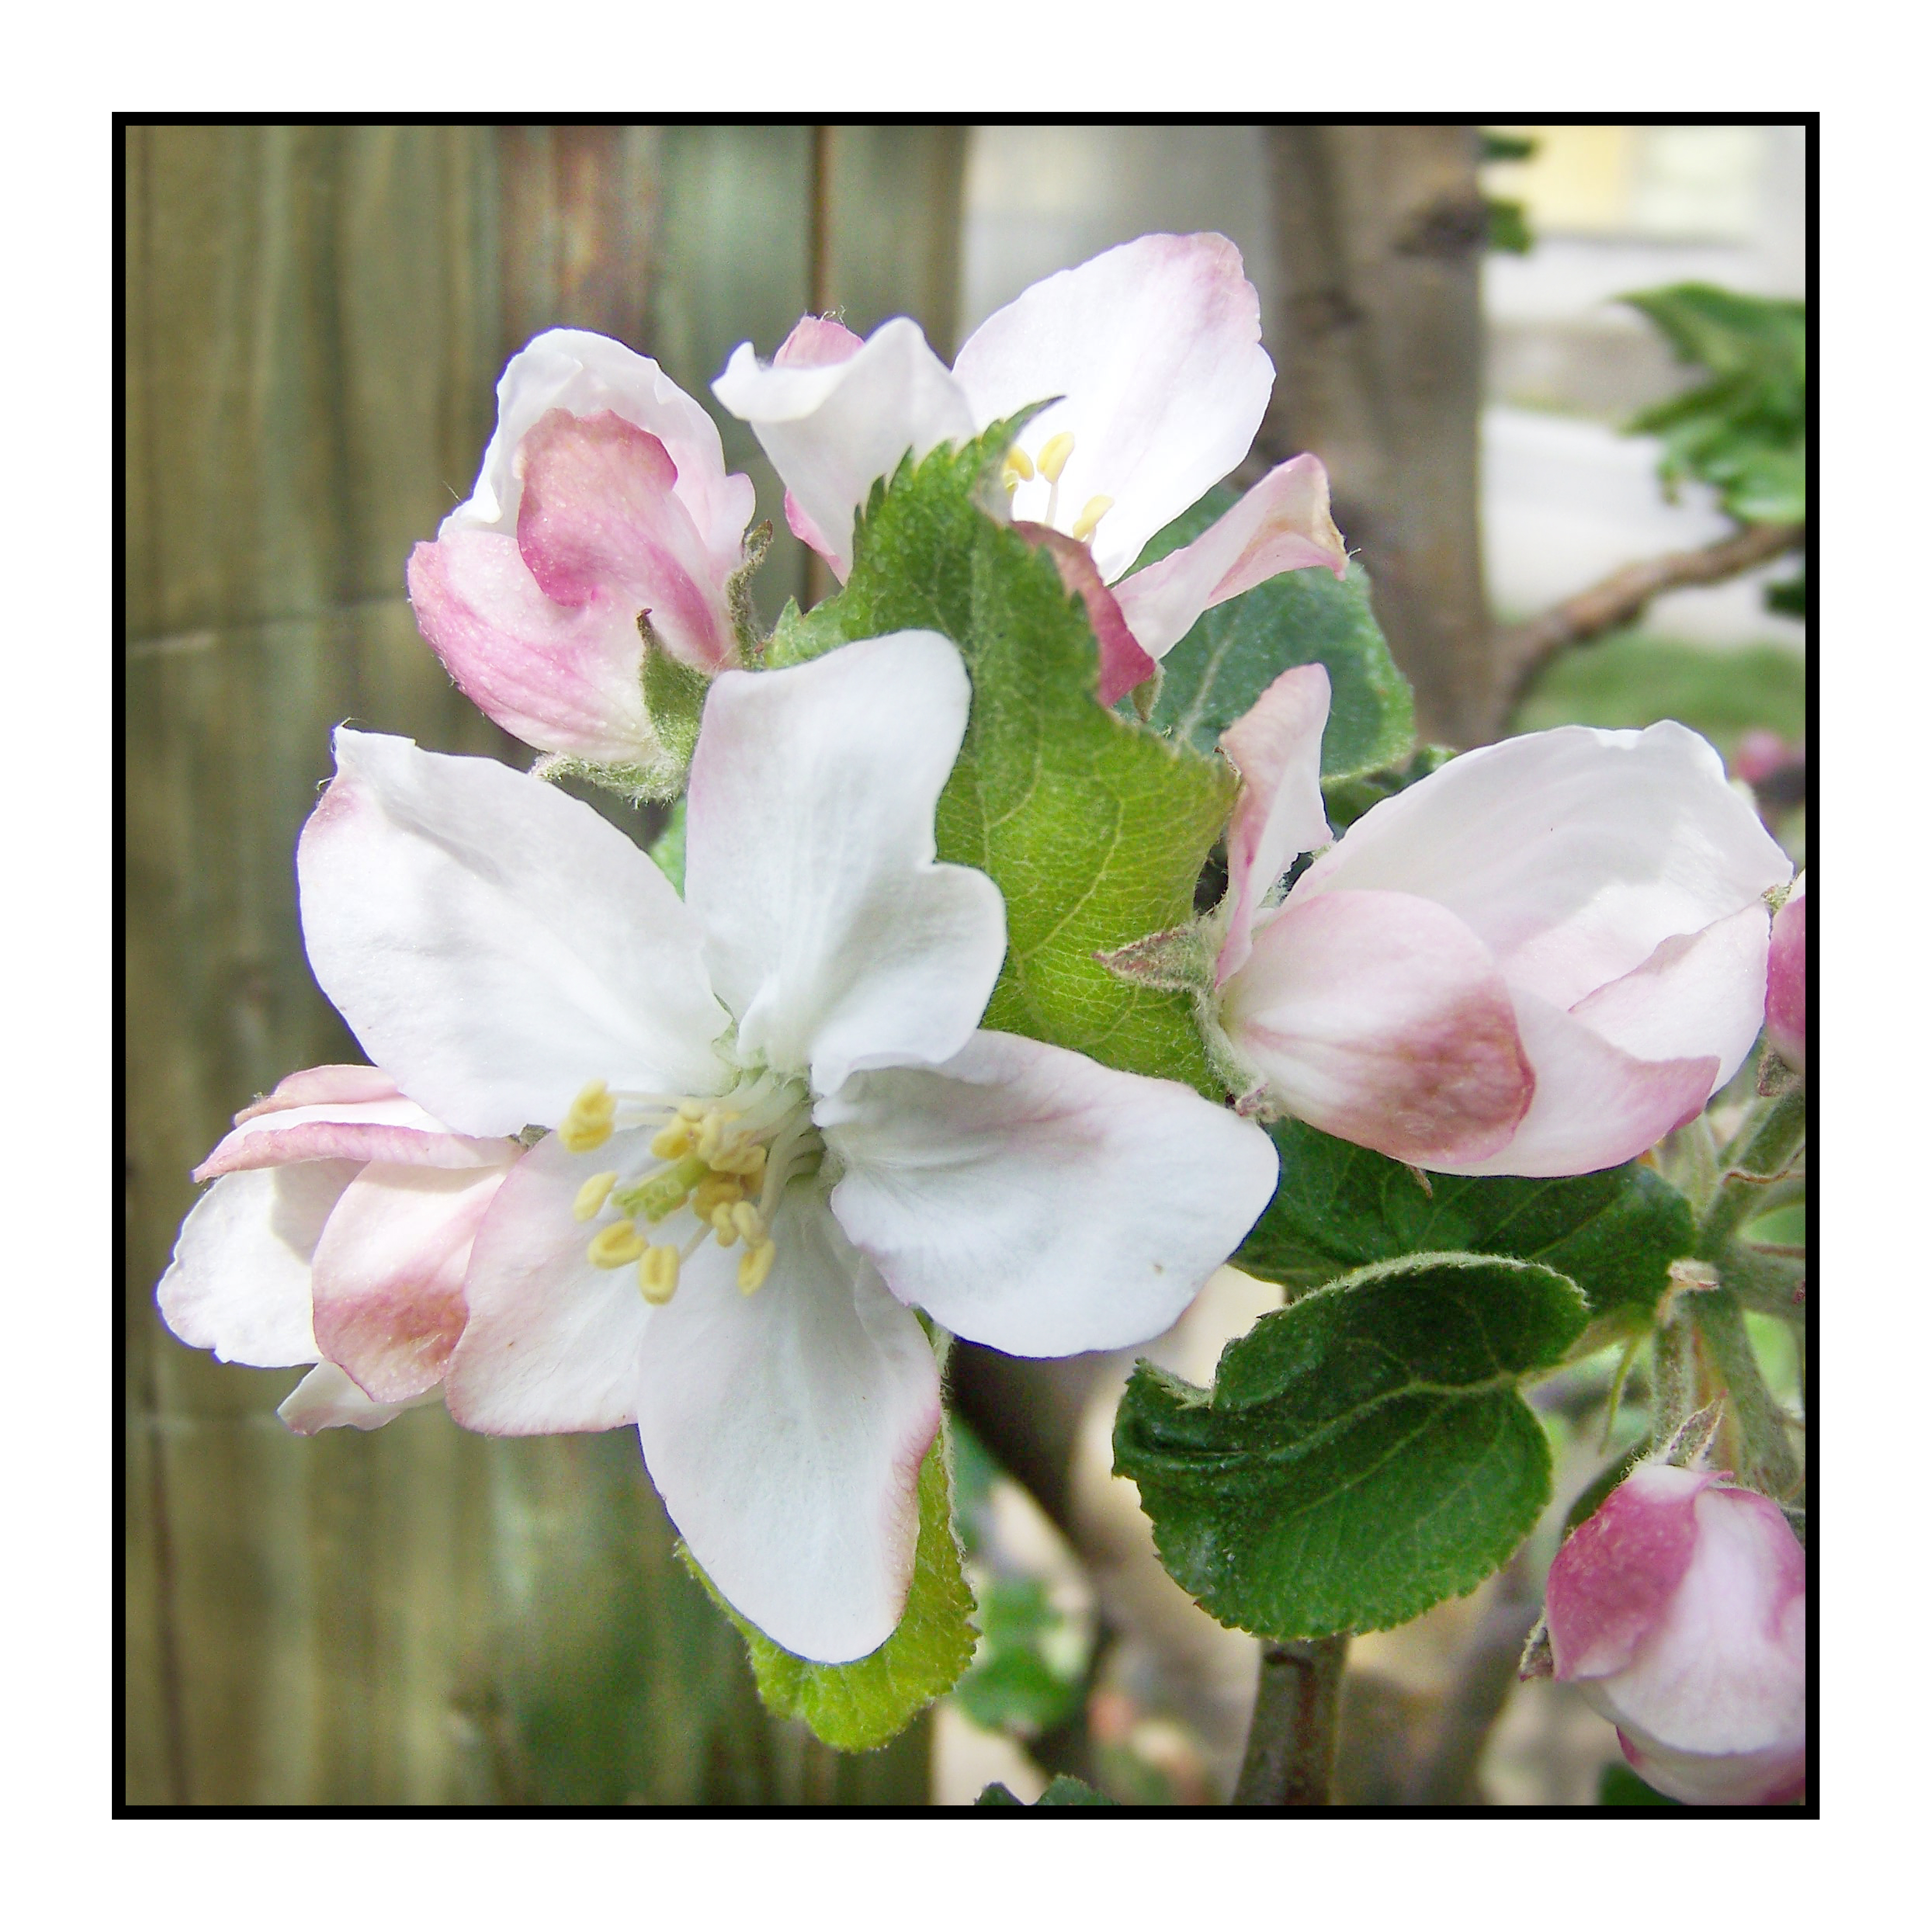 fleur- pomme_ printemps-Pommes bio- locales- arboriculteur- ferme-magasin de producteurs - Gilly sur Isère / Albertville- savoie - terroir